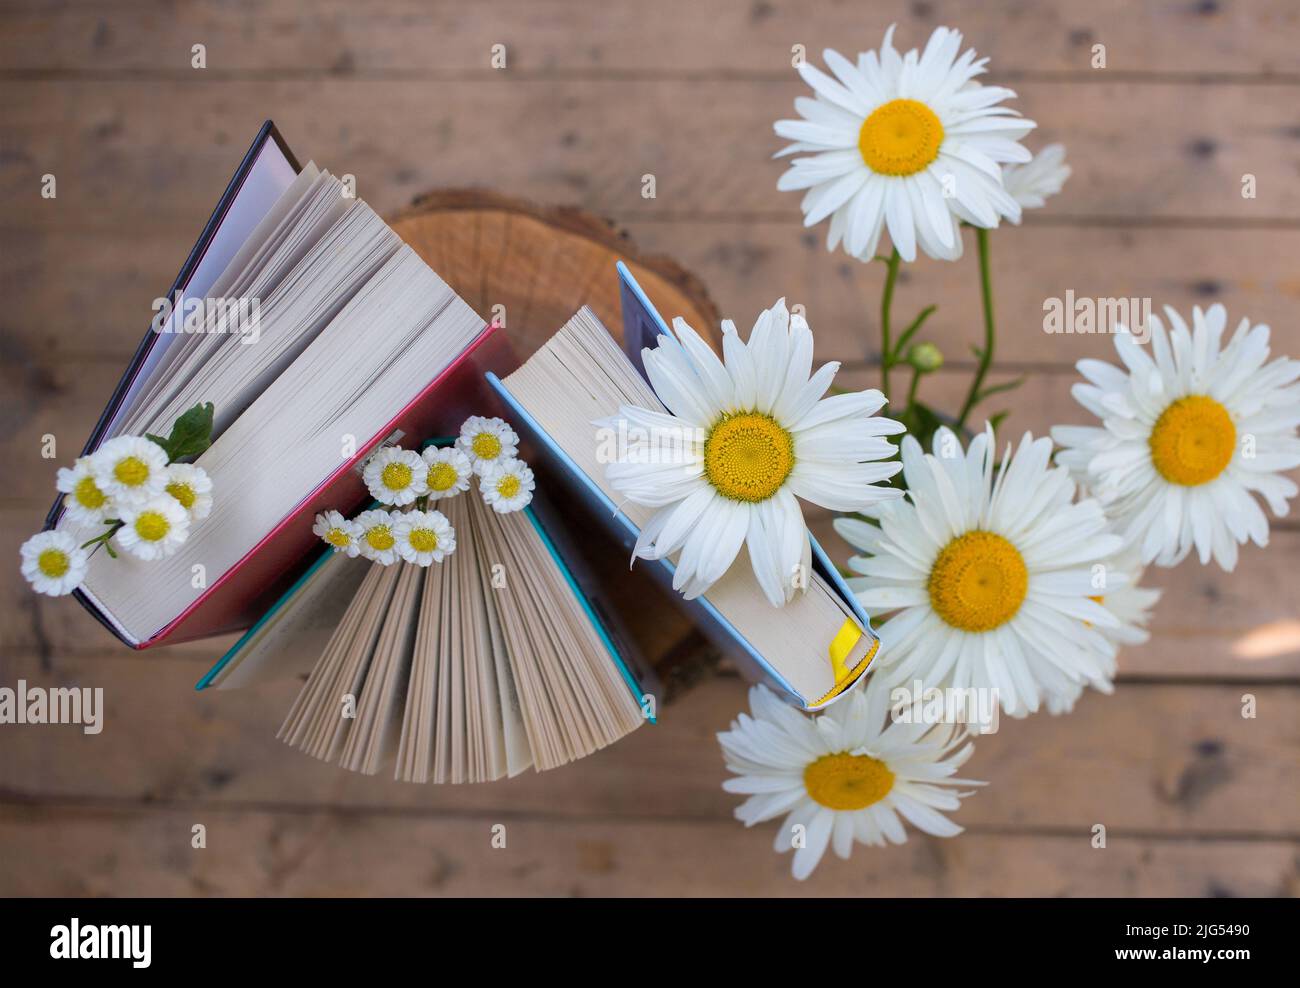 Drei Bücher stehen aufrecht, ein Strauß Gänseblümchen in der Nähe. Gemütliches Lesen, Bildung, Weisheit und Wissen. Digitale Entgiftung. Tag Buchen. Blick von oben. Selec Stockfoto